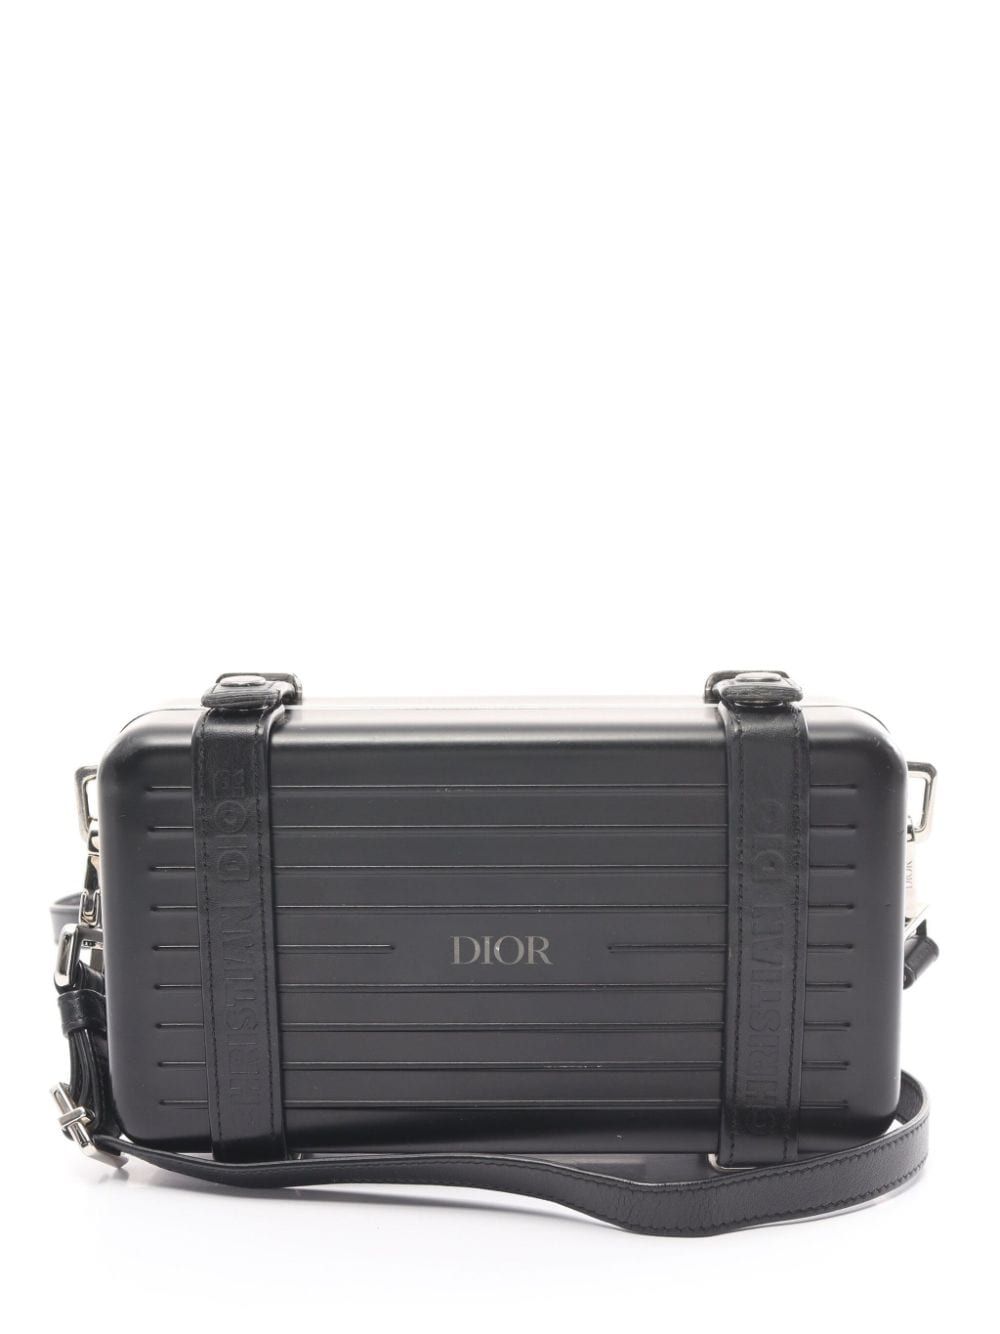 Pre-owned Dior X Rimowa Personal Clutch Bag In Black